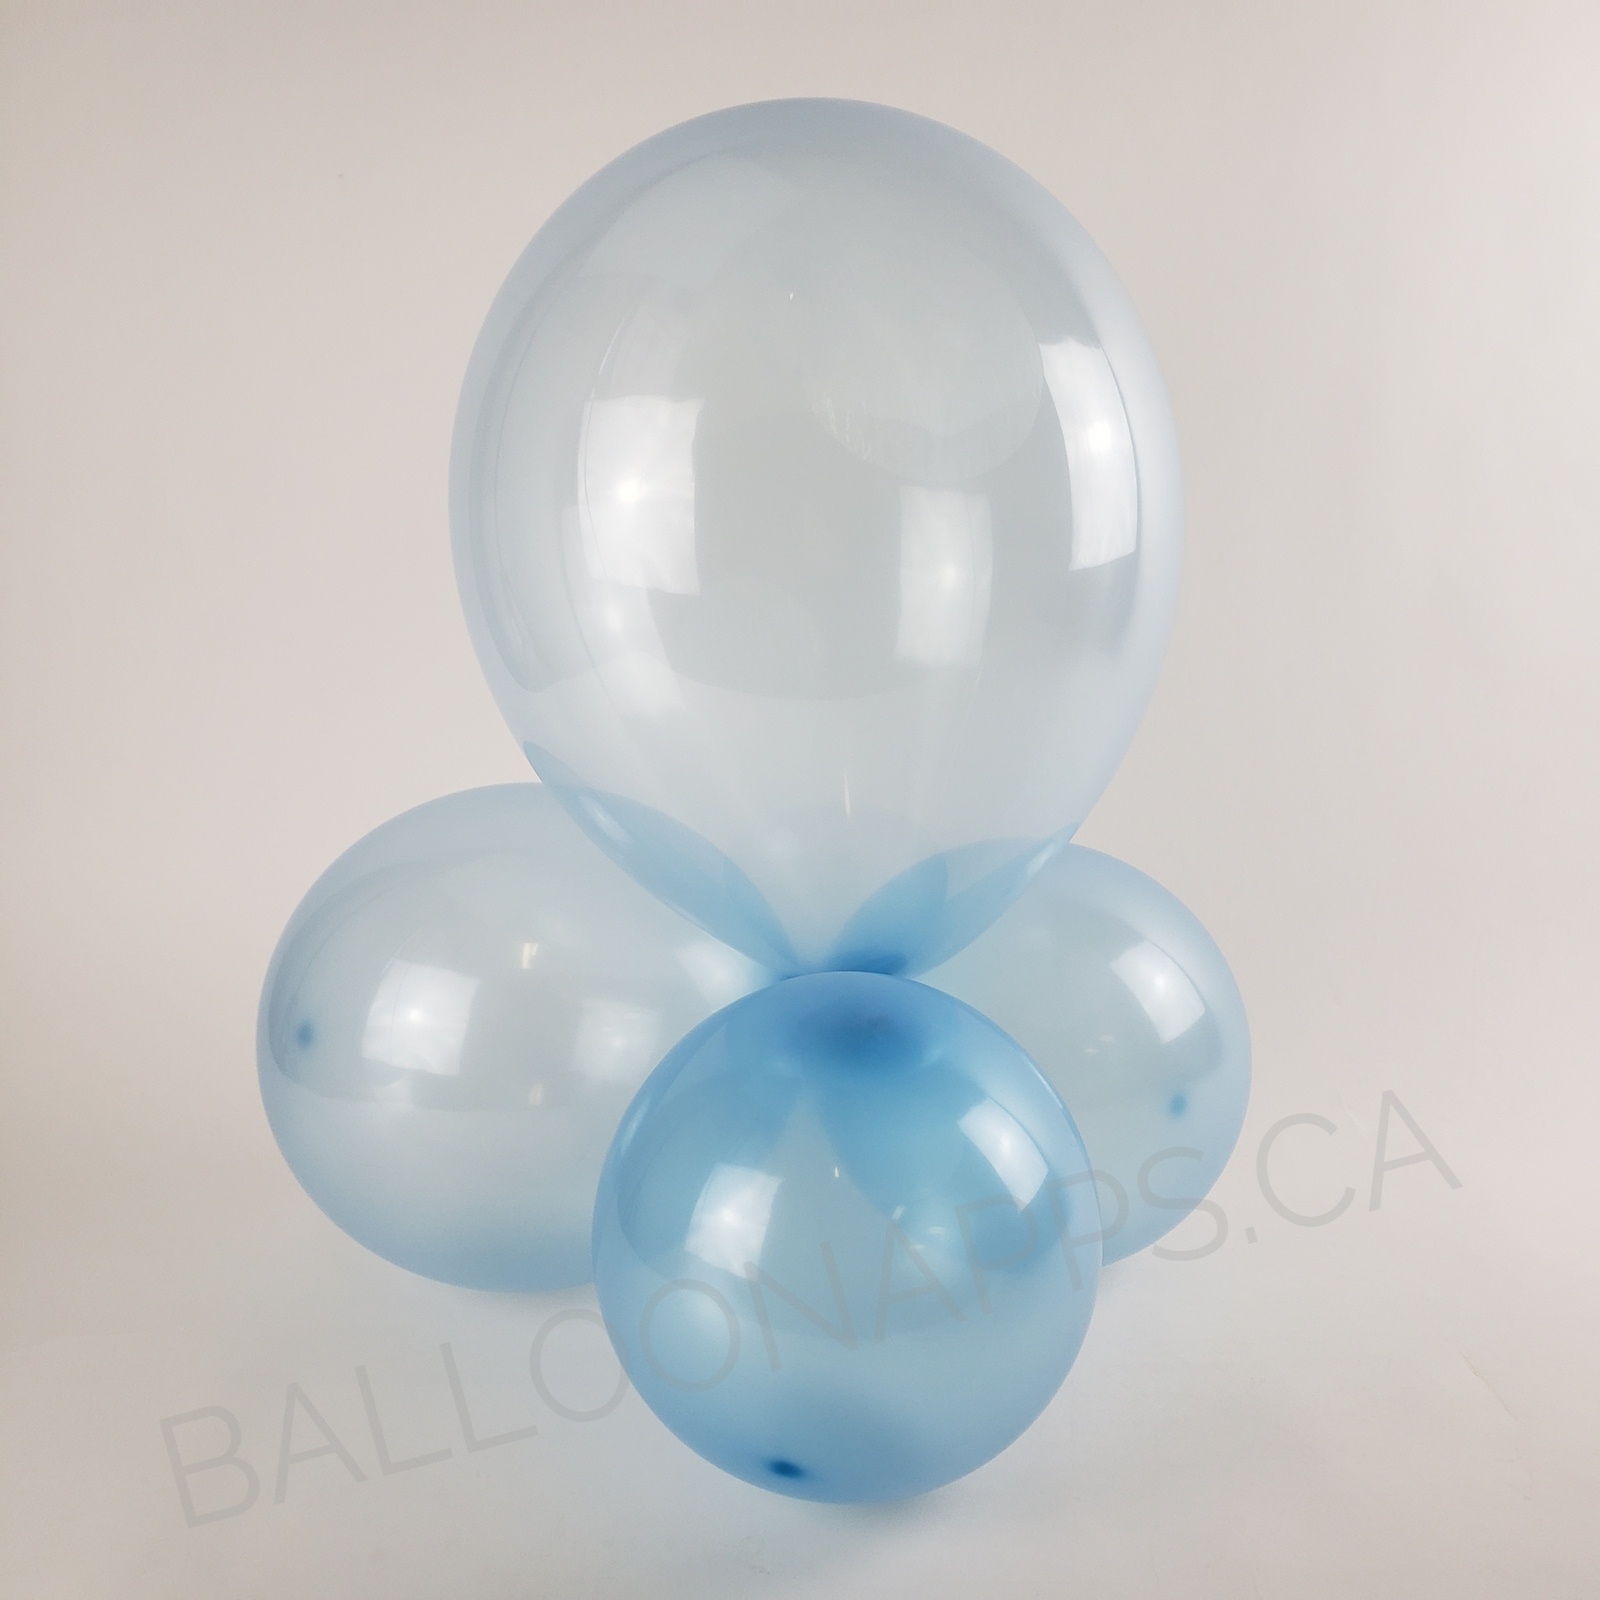 balloon texture BET (1) 24